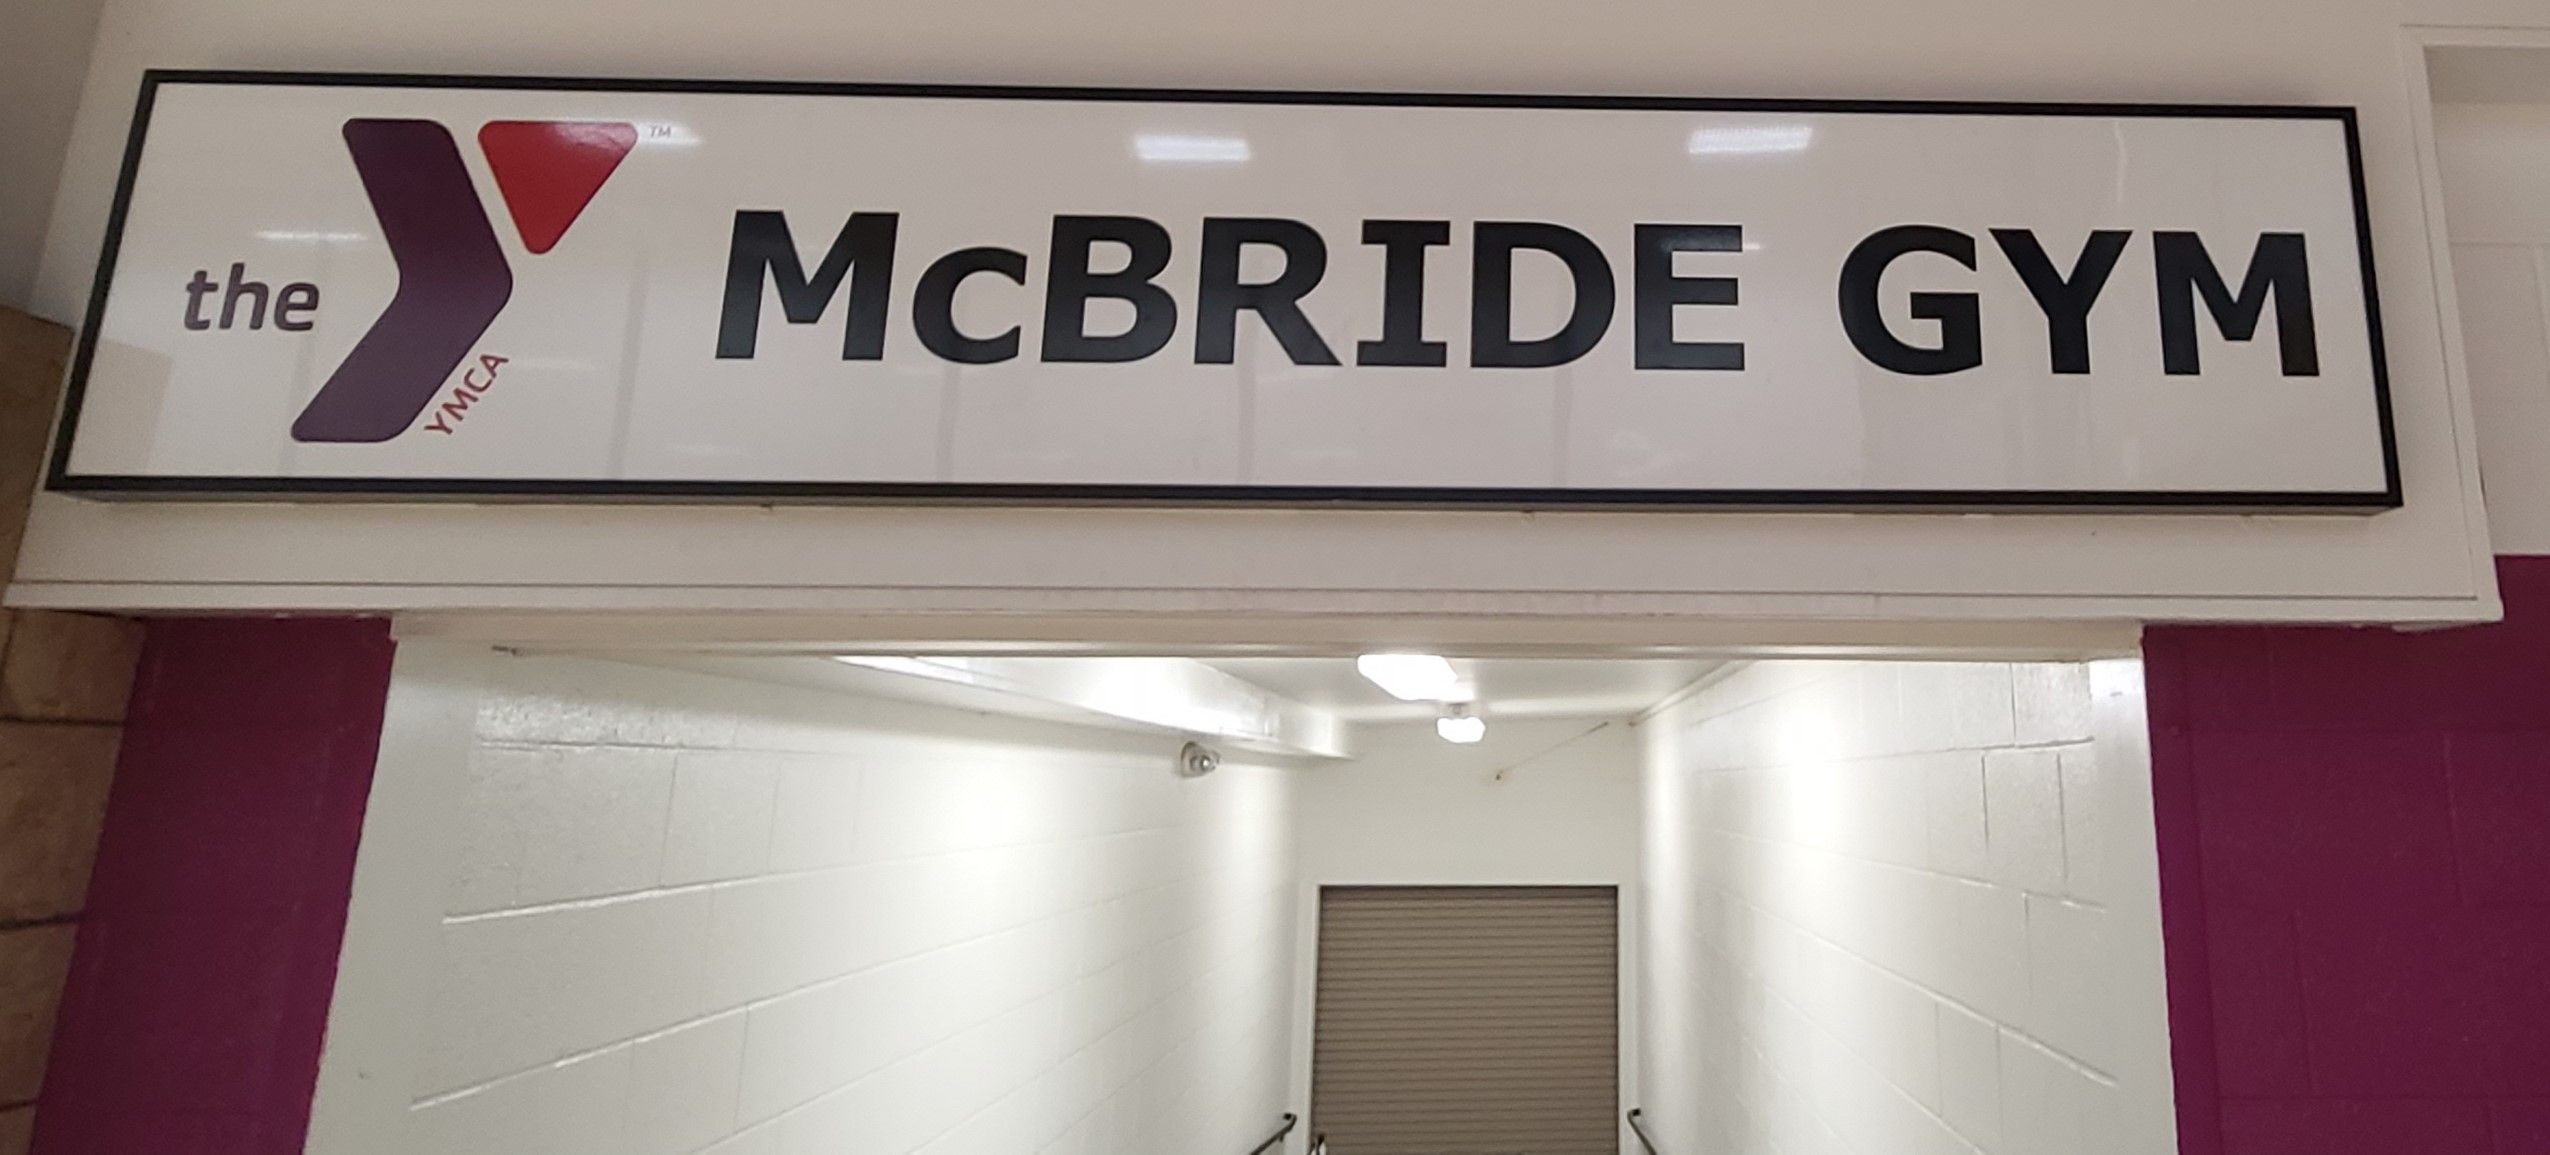 Mcbride Gym Sign